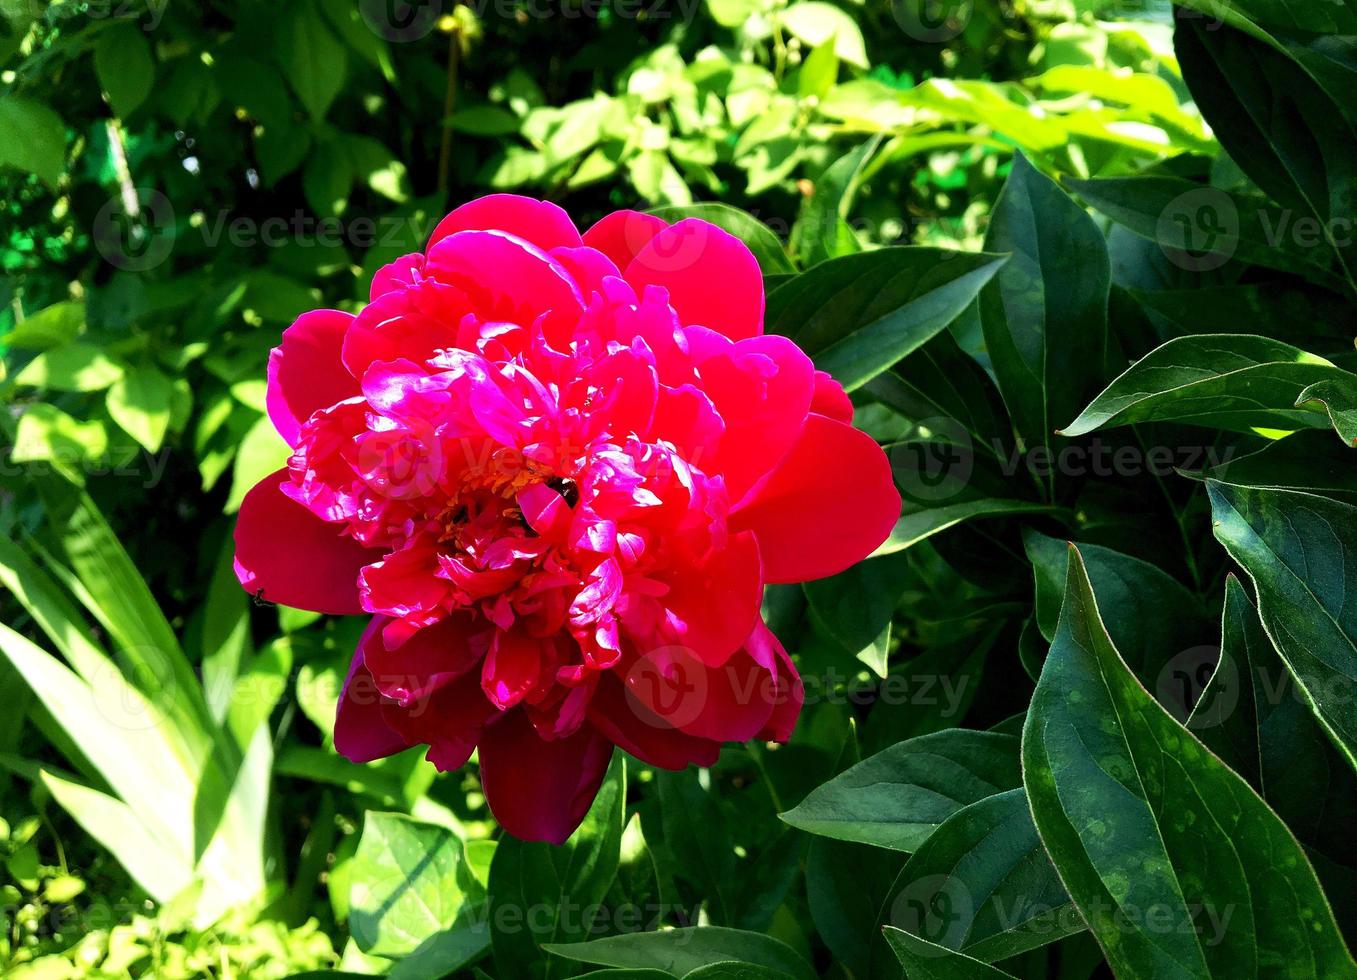 la foto colorida muestra una peonía en flor